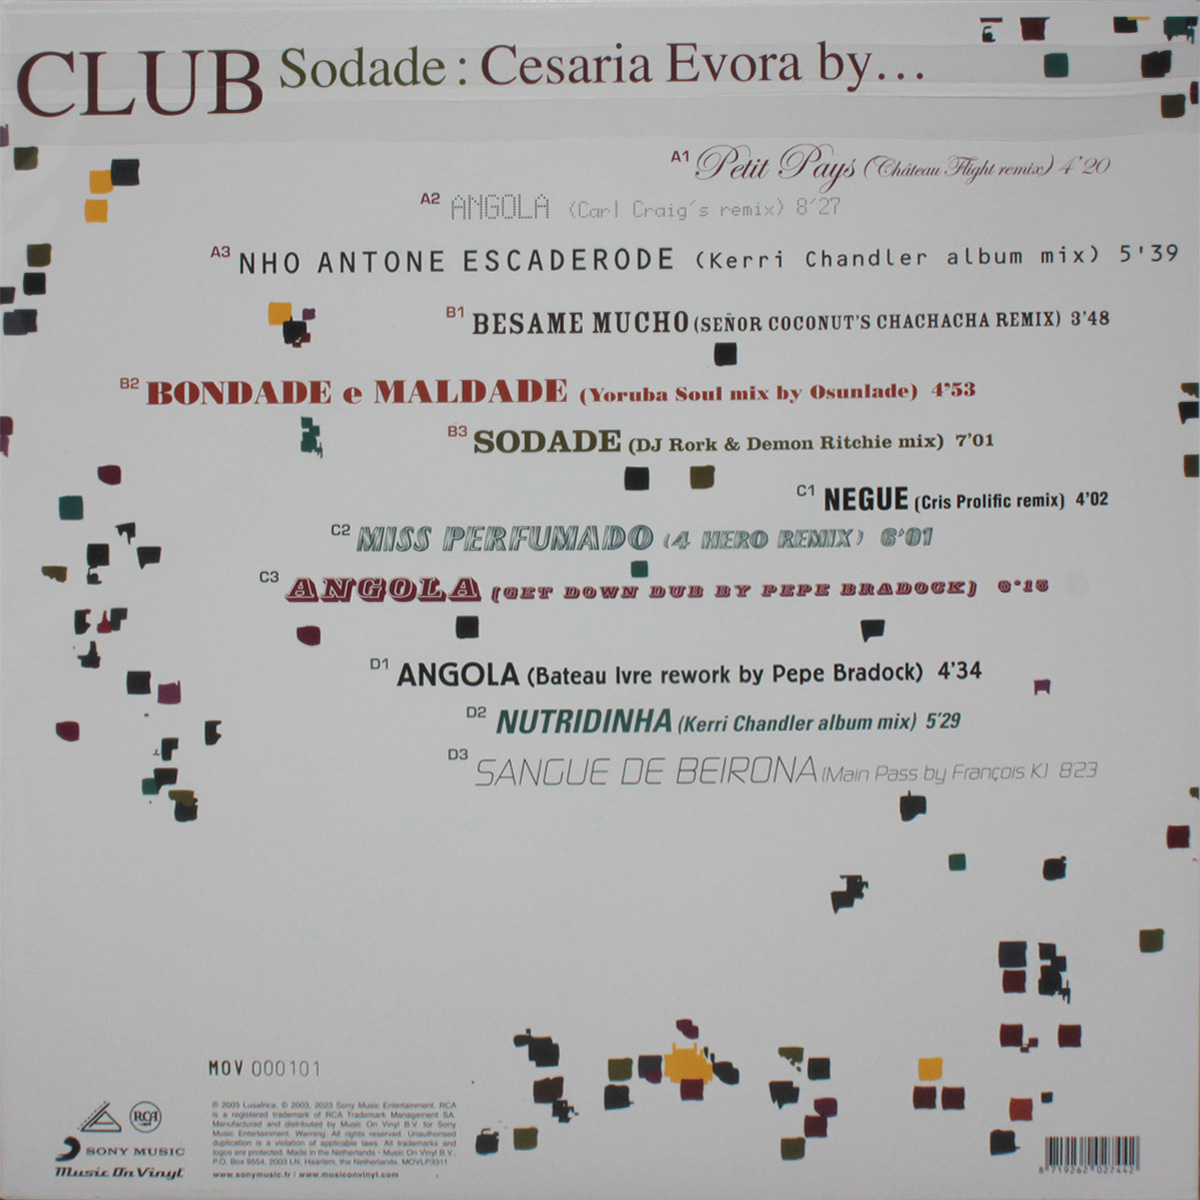 Cesaria Evora - Club Sodade : Cesaria Evora By... [Transparent Red Vinyl] (MOVLP3311)